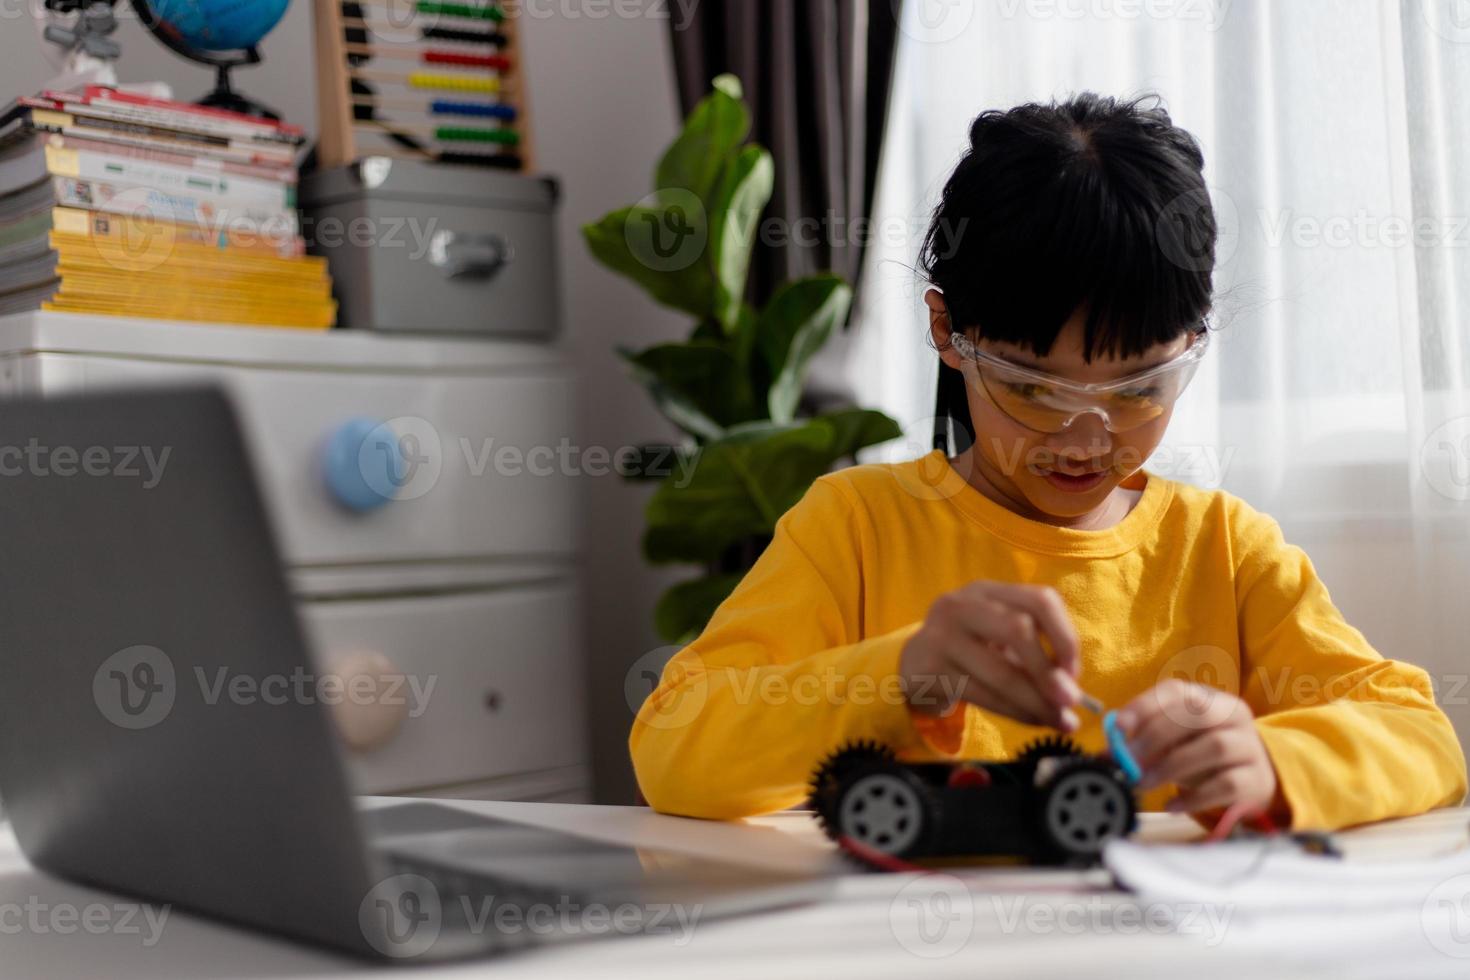 les étudiants asiatiques apprennent à la maison à coder des voitures robotisées et des câbles de cartes électroniques dans la tige, la vapeur, le code informatique de la technologie des sciences de l'ingénierie mathématique dans le concept de robotique pour les enfants. photo